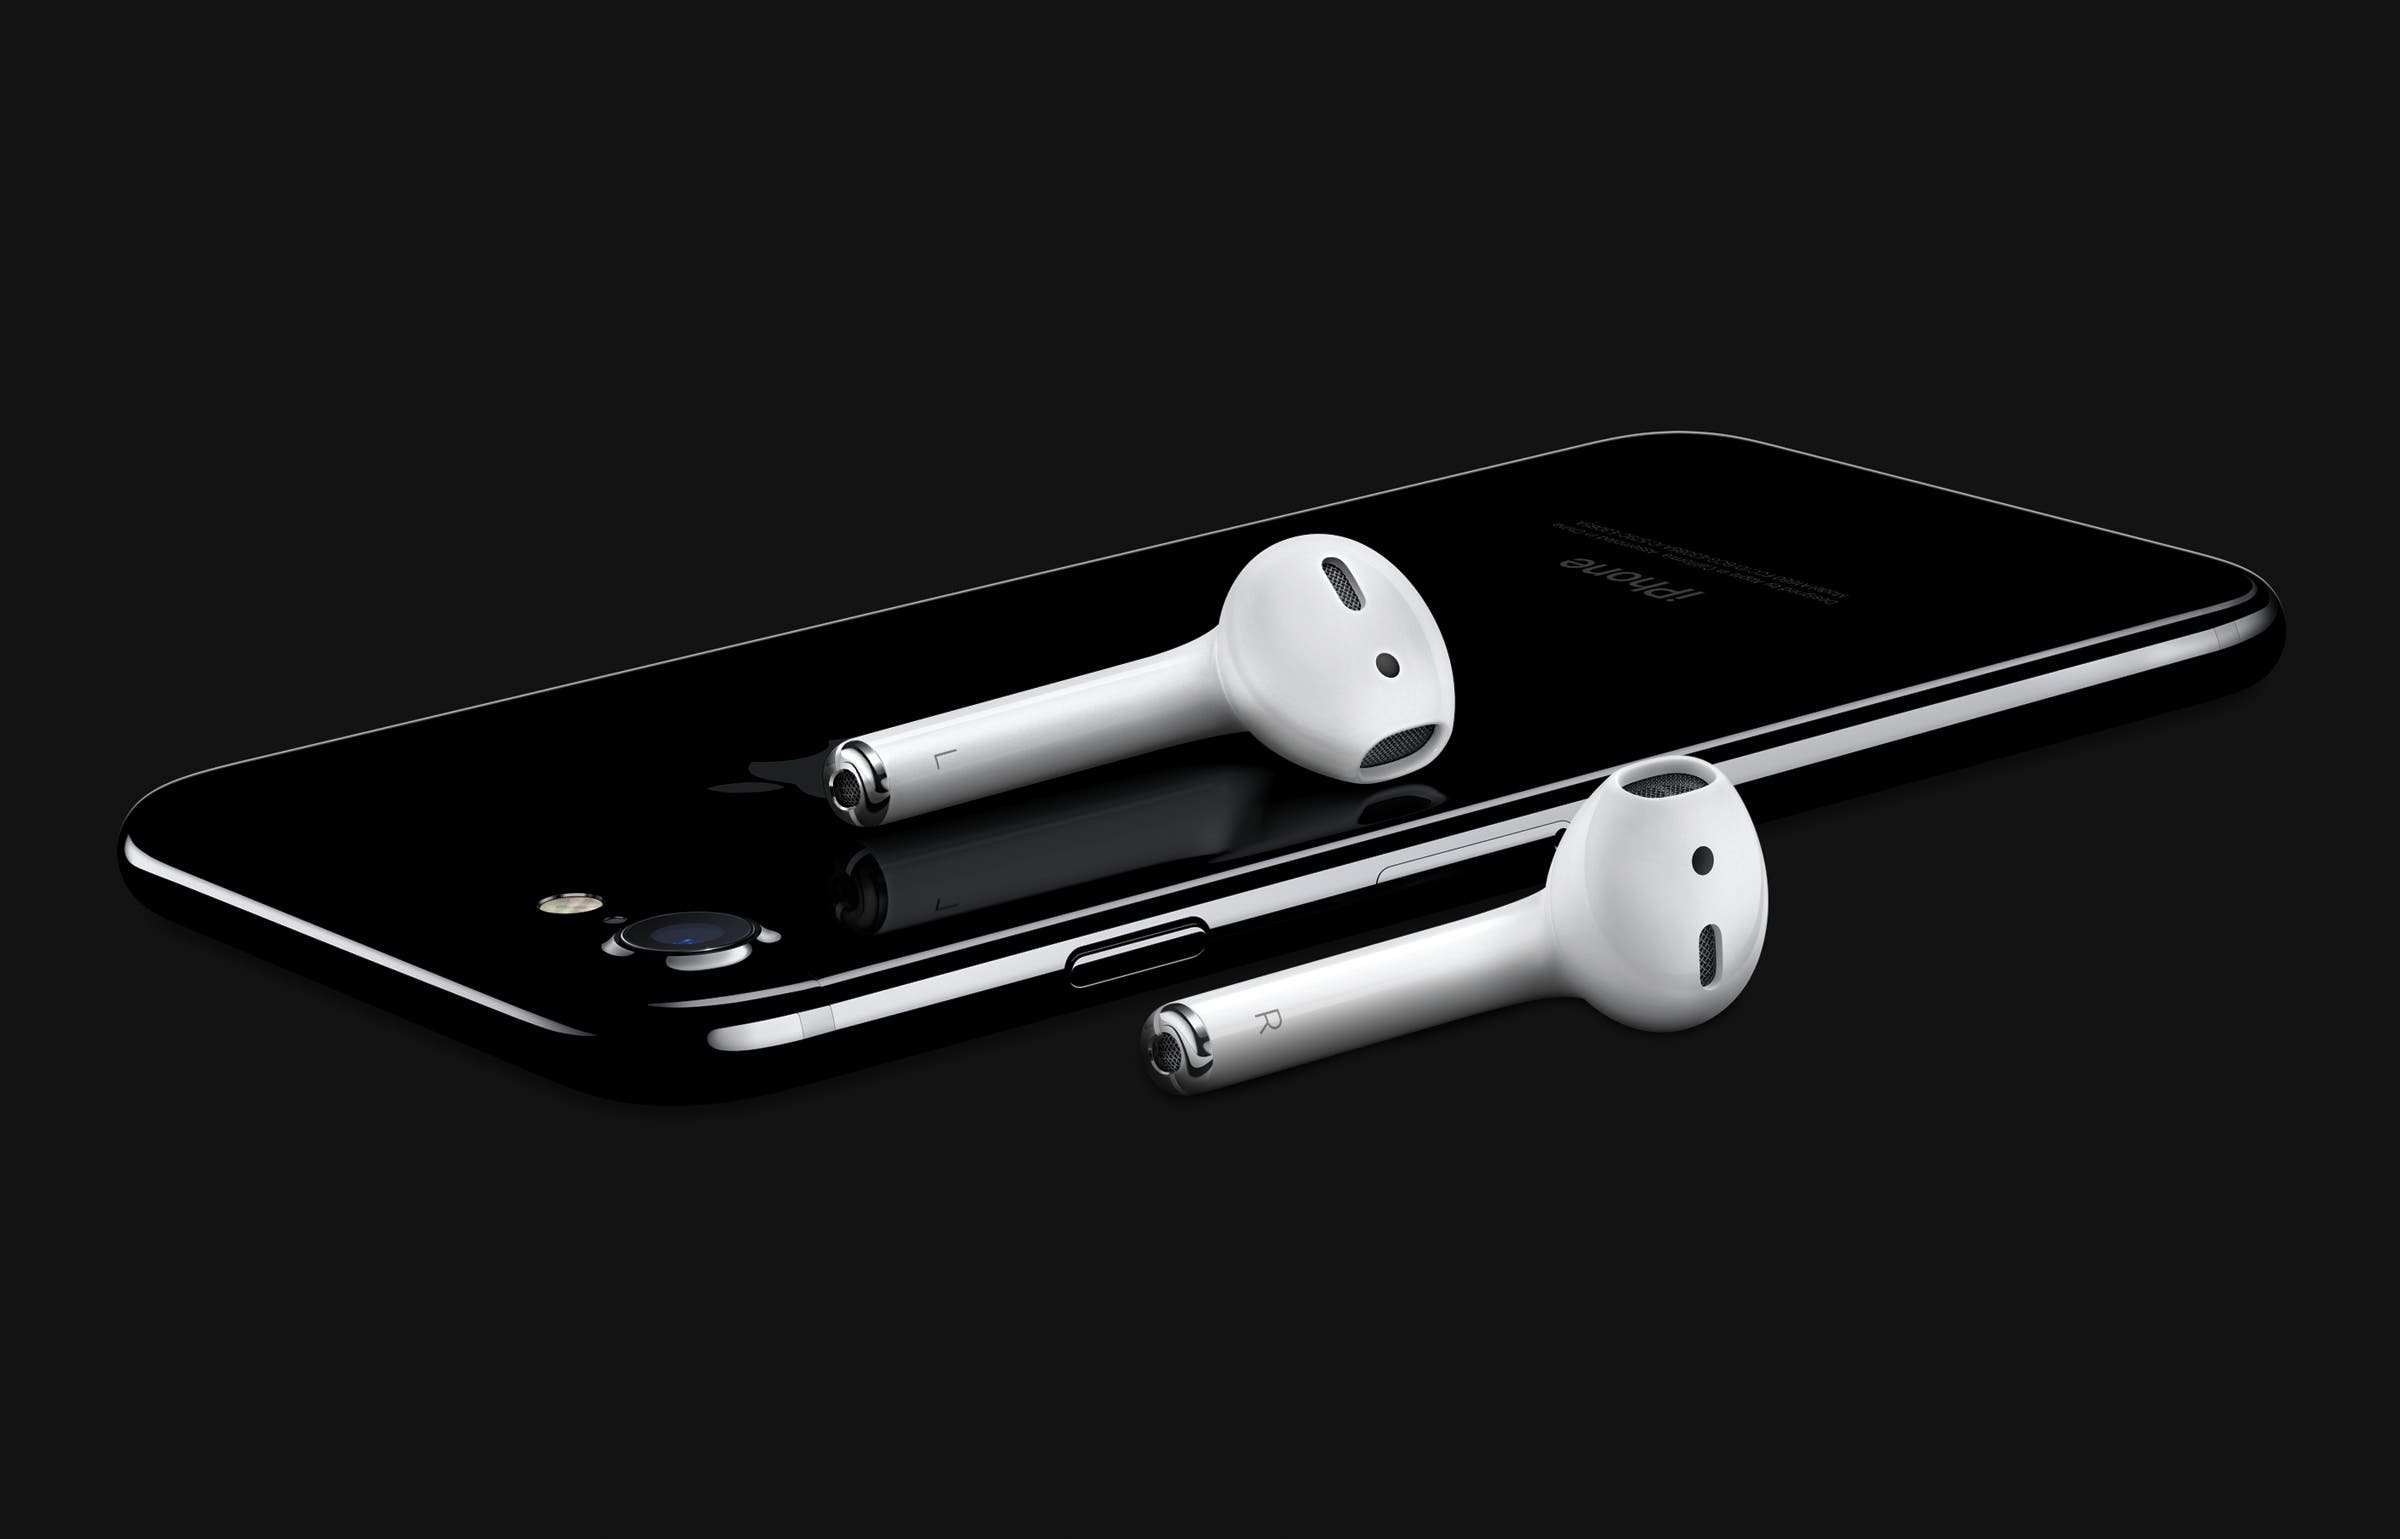 Versterken Bemiddelaar geroosterd brood The iPhone 7 has no headphone jack, so these are your options | Fox News